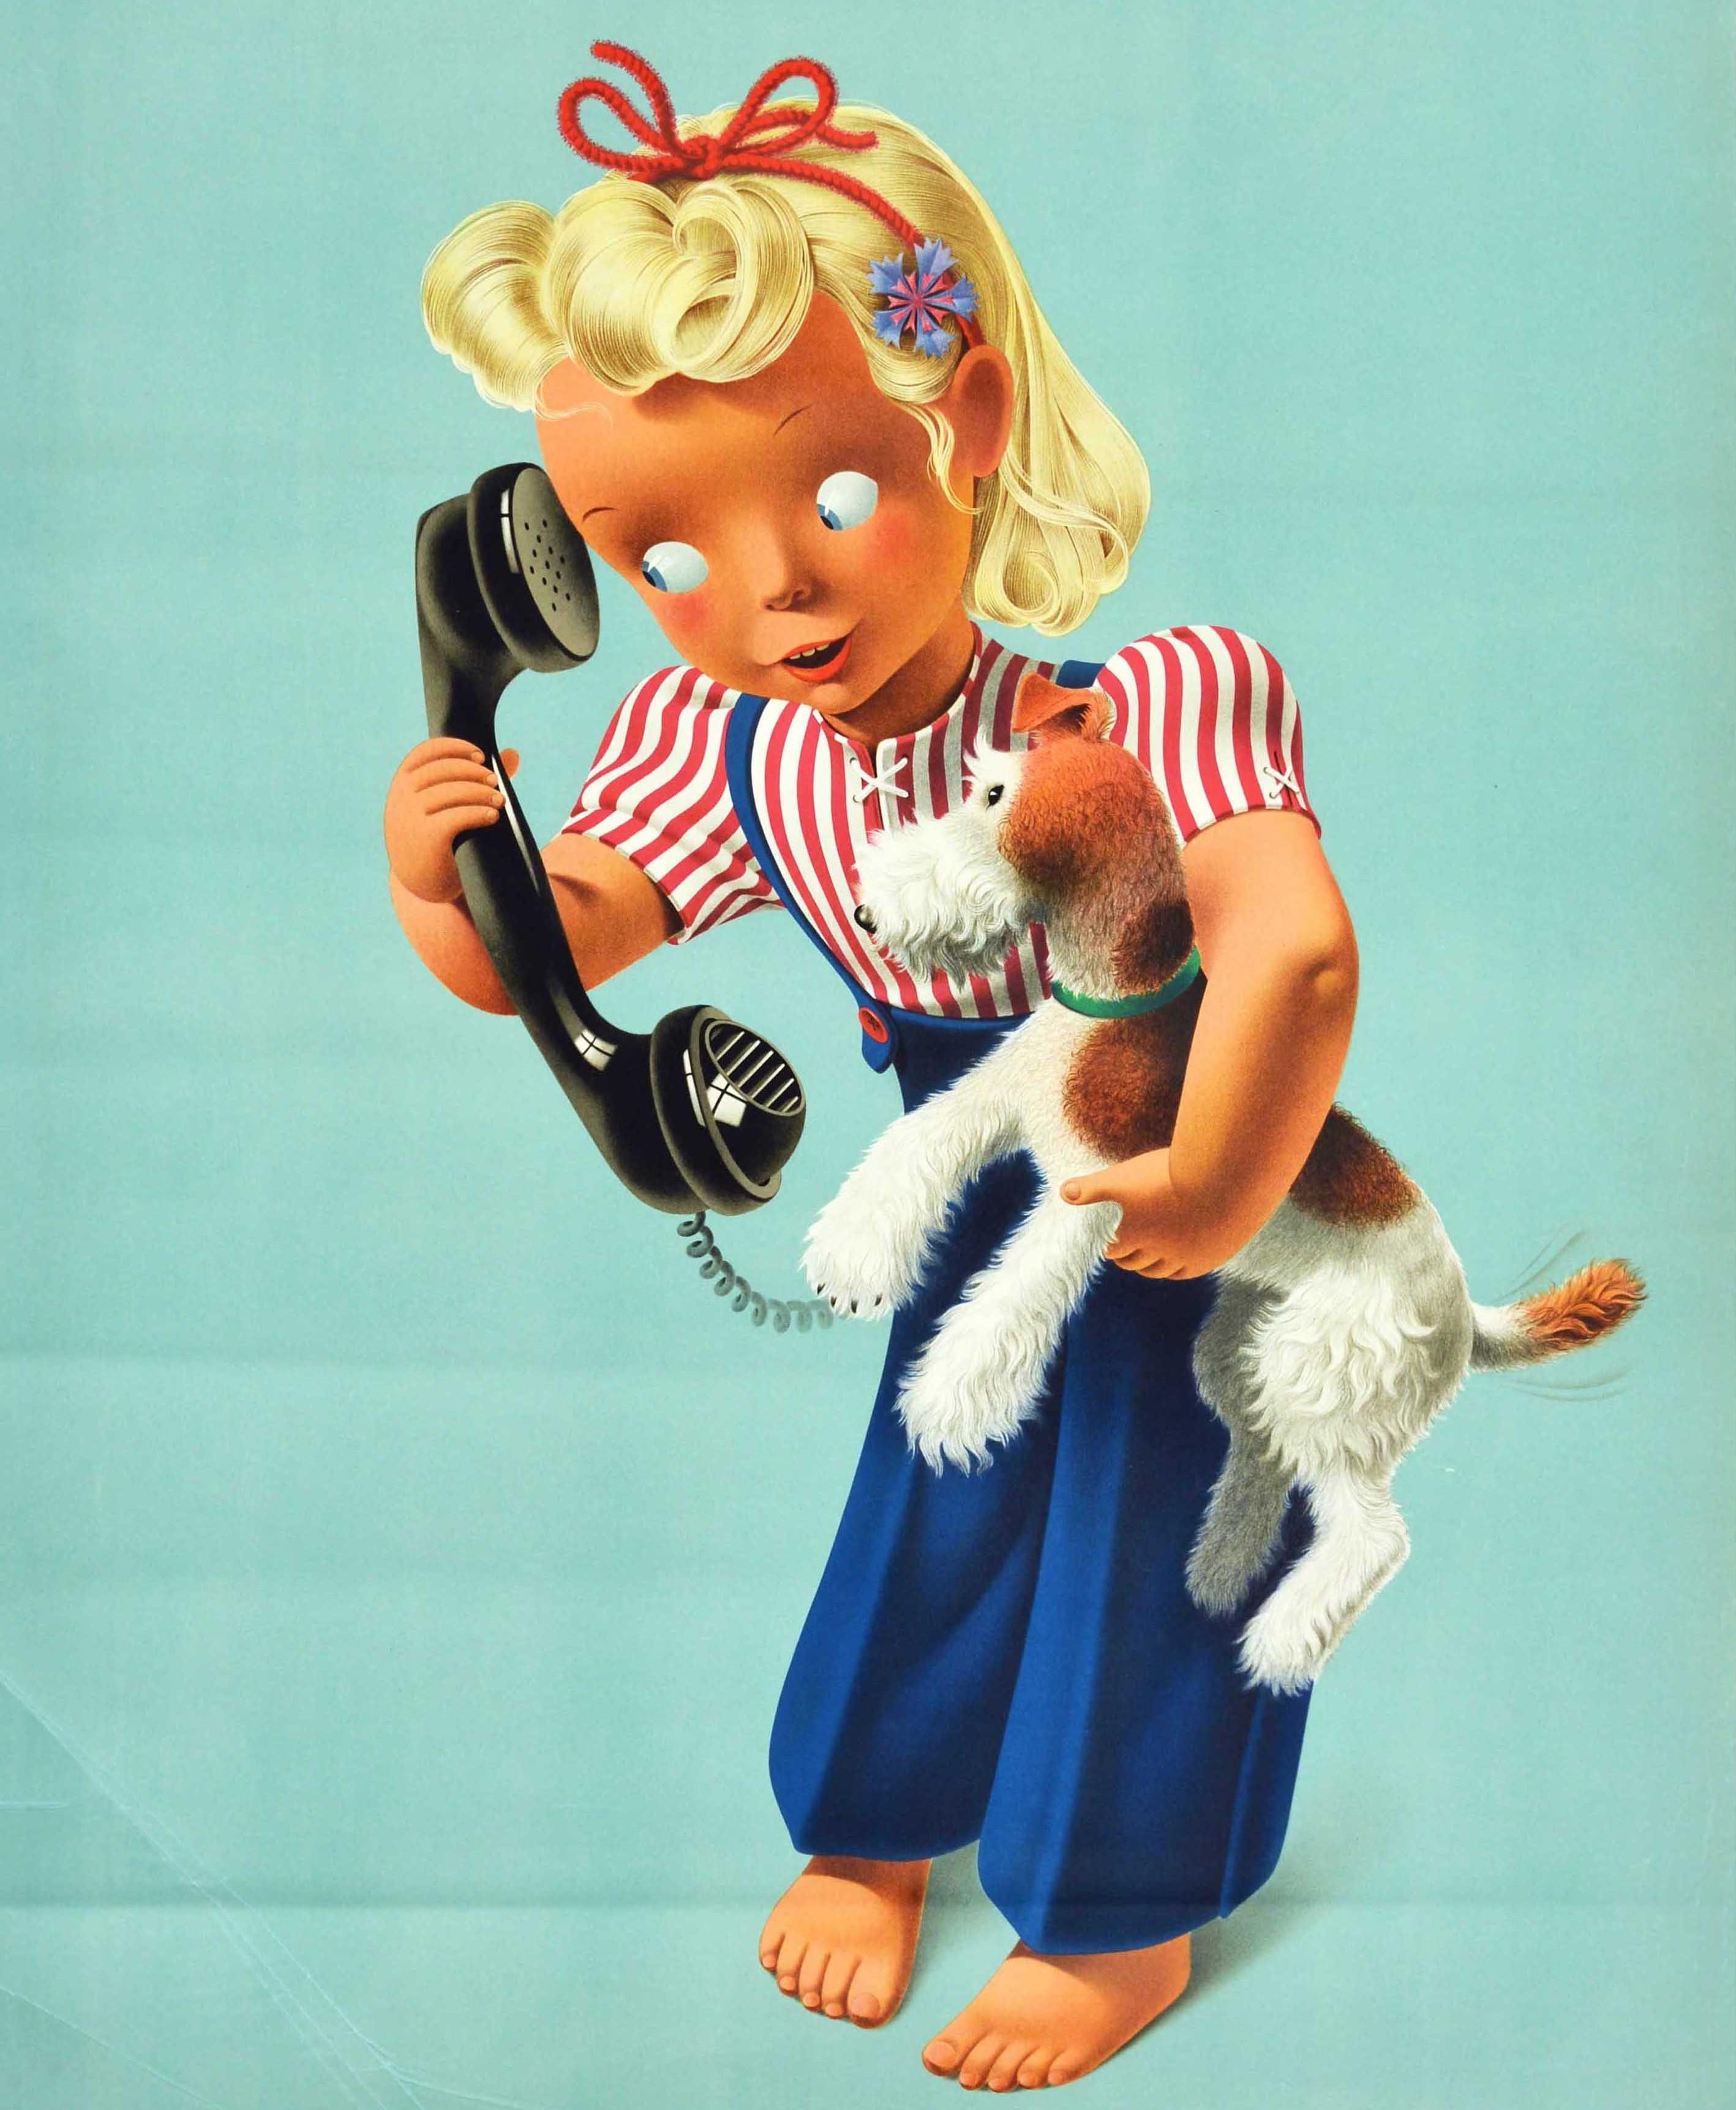 Affiche publicitaire vintage originale pour Swiss Telecom - Telephonez ! - comportant une adorable illustration de Donald Brun (1909-1999) représentant une jeune fille vêtue d'une chemise à rayures rouges et blanches et d'une salopette bleue avec